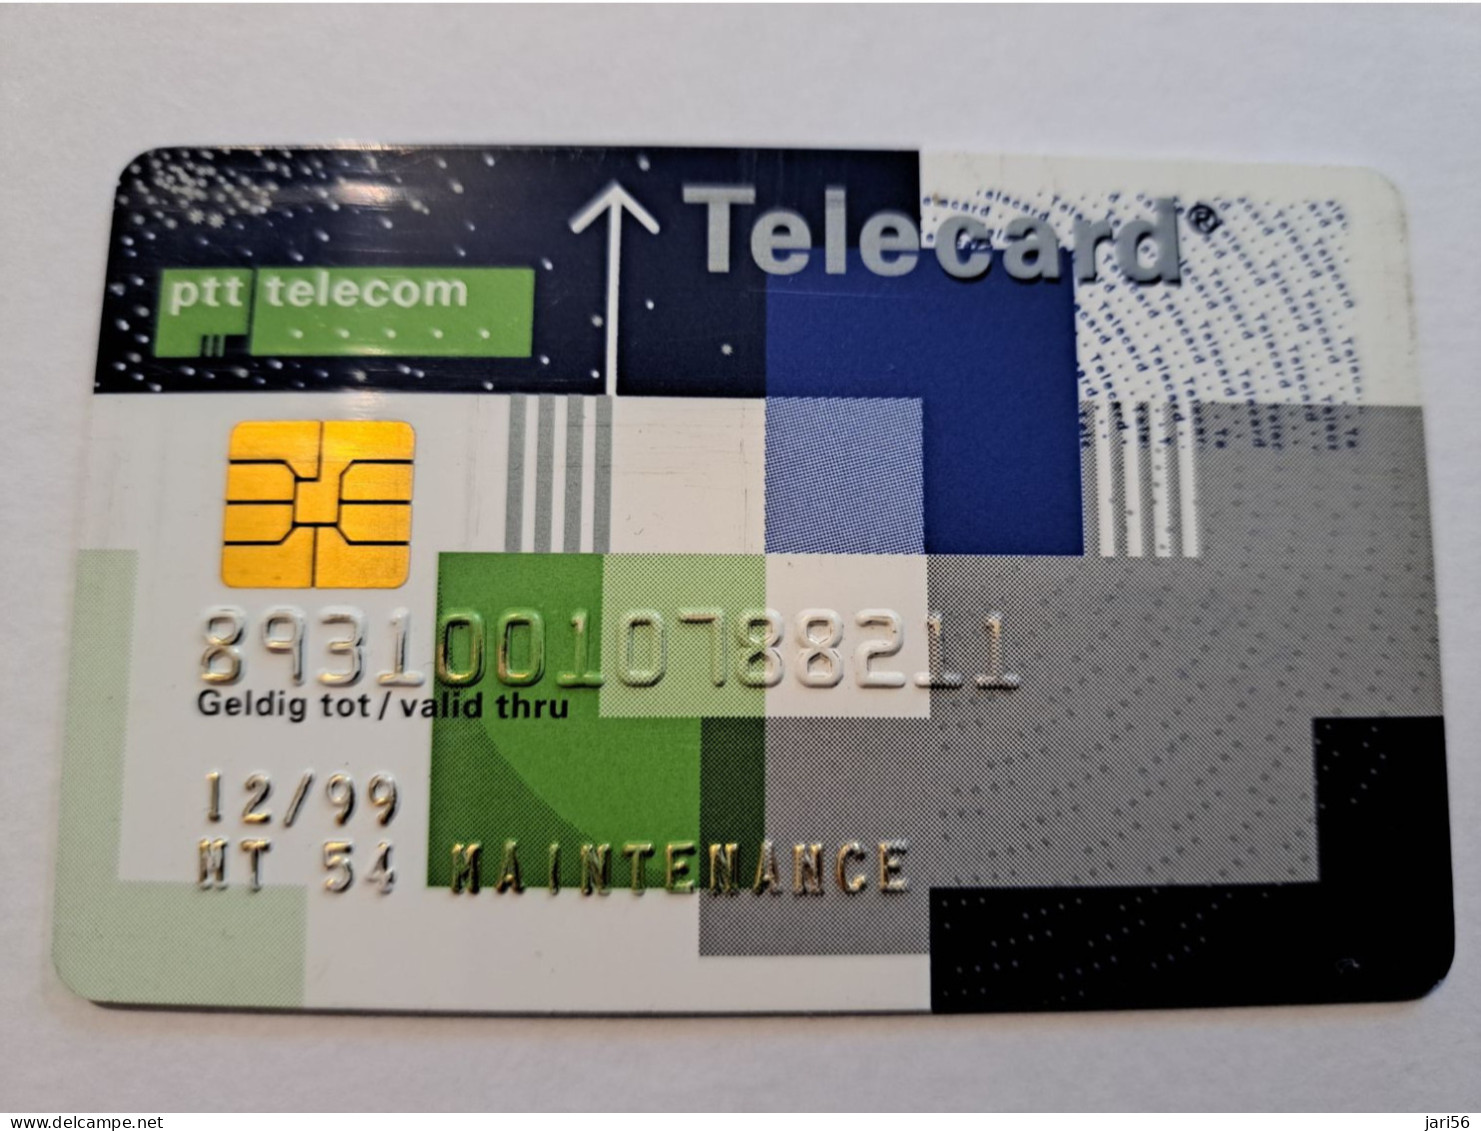 NETHERLANDS  /CHIPCARD/ MAINTENANCE  PTT TELECOM/TELECARD/ VERY RARE !!  / DATE 12/99   ** 16305** - [4] Test & Servicios